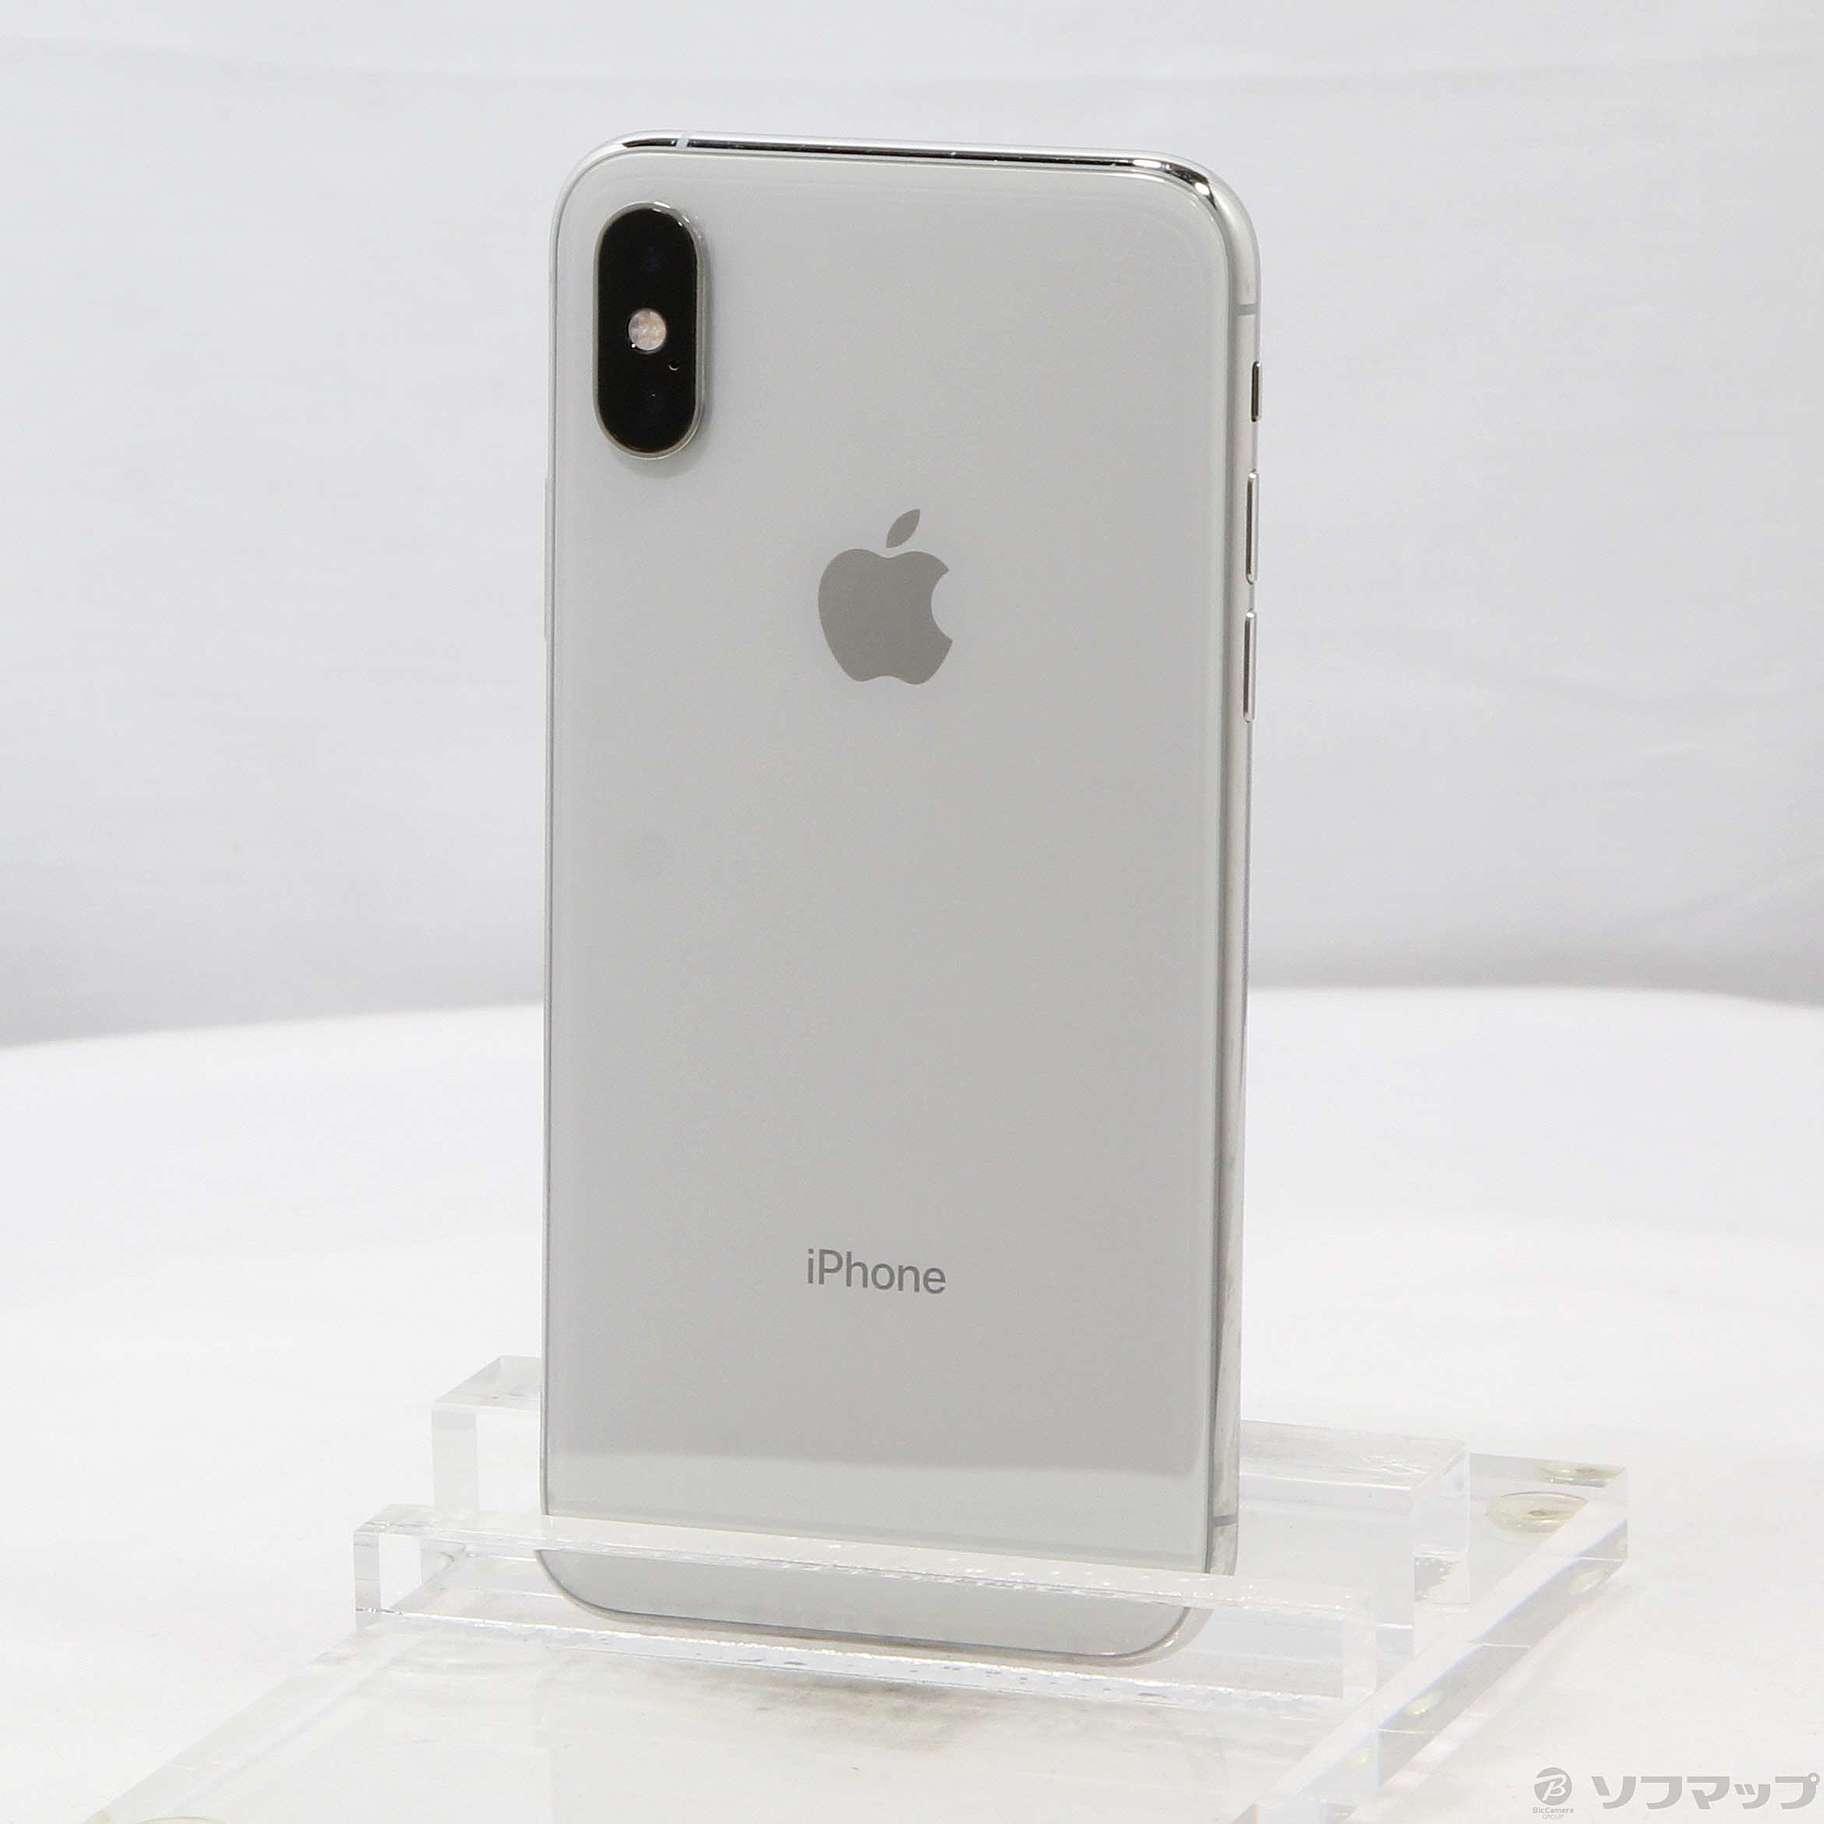 iPhone Xs 64GB silver